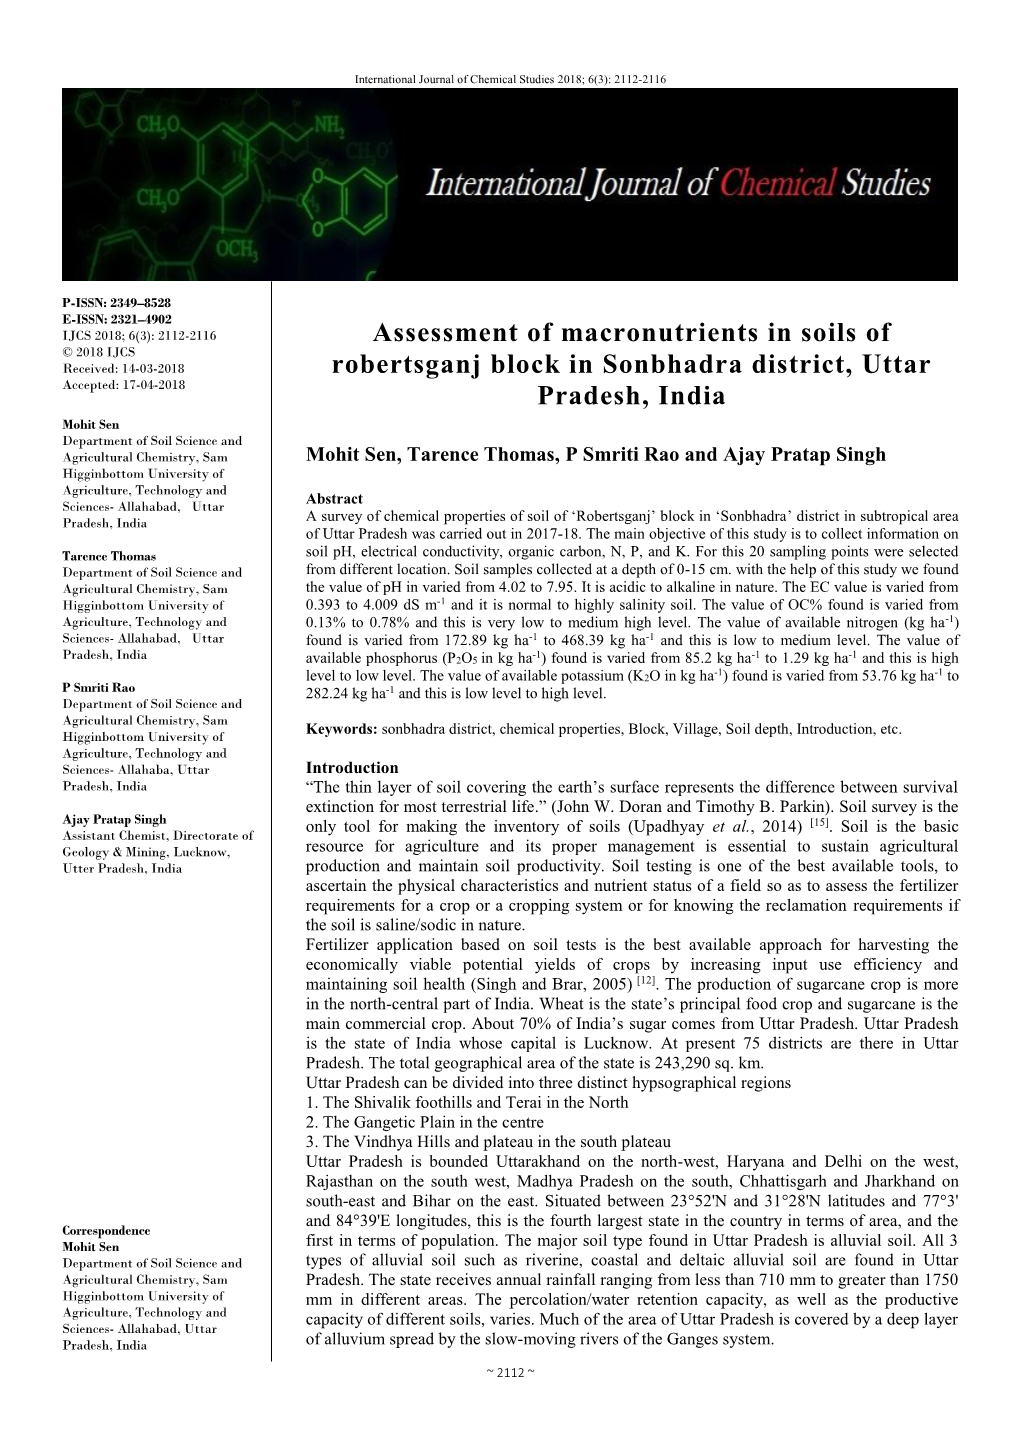 Assessment of Macronutrients in Soils of Robertsganj Block in Sonbhadra